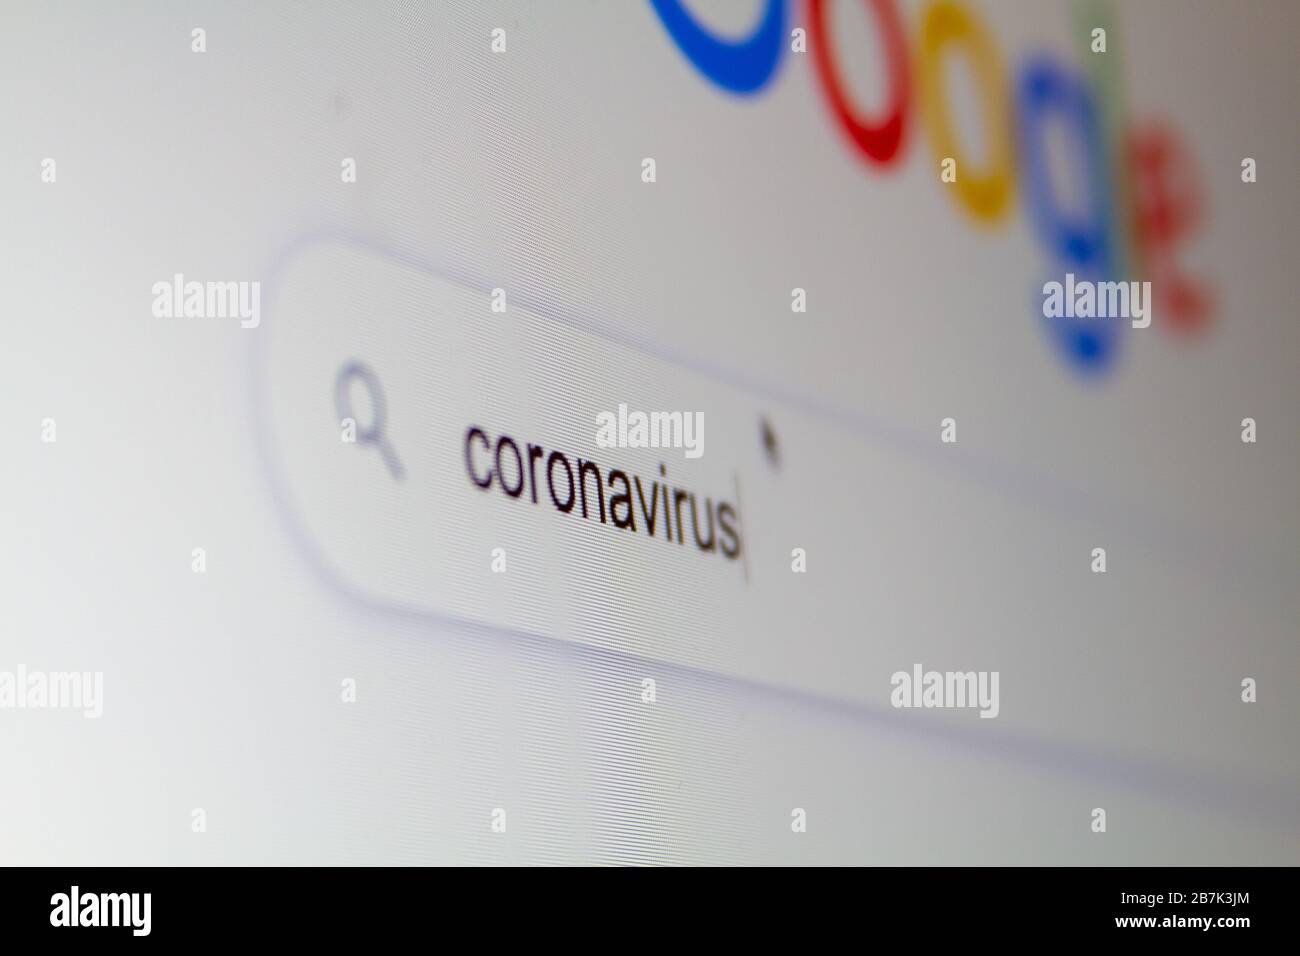 Suchen Sie in einer Internet-Suchmaschine auf einem Computer nach "Coronavirus". Stockfoto